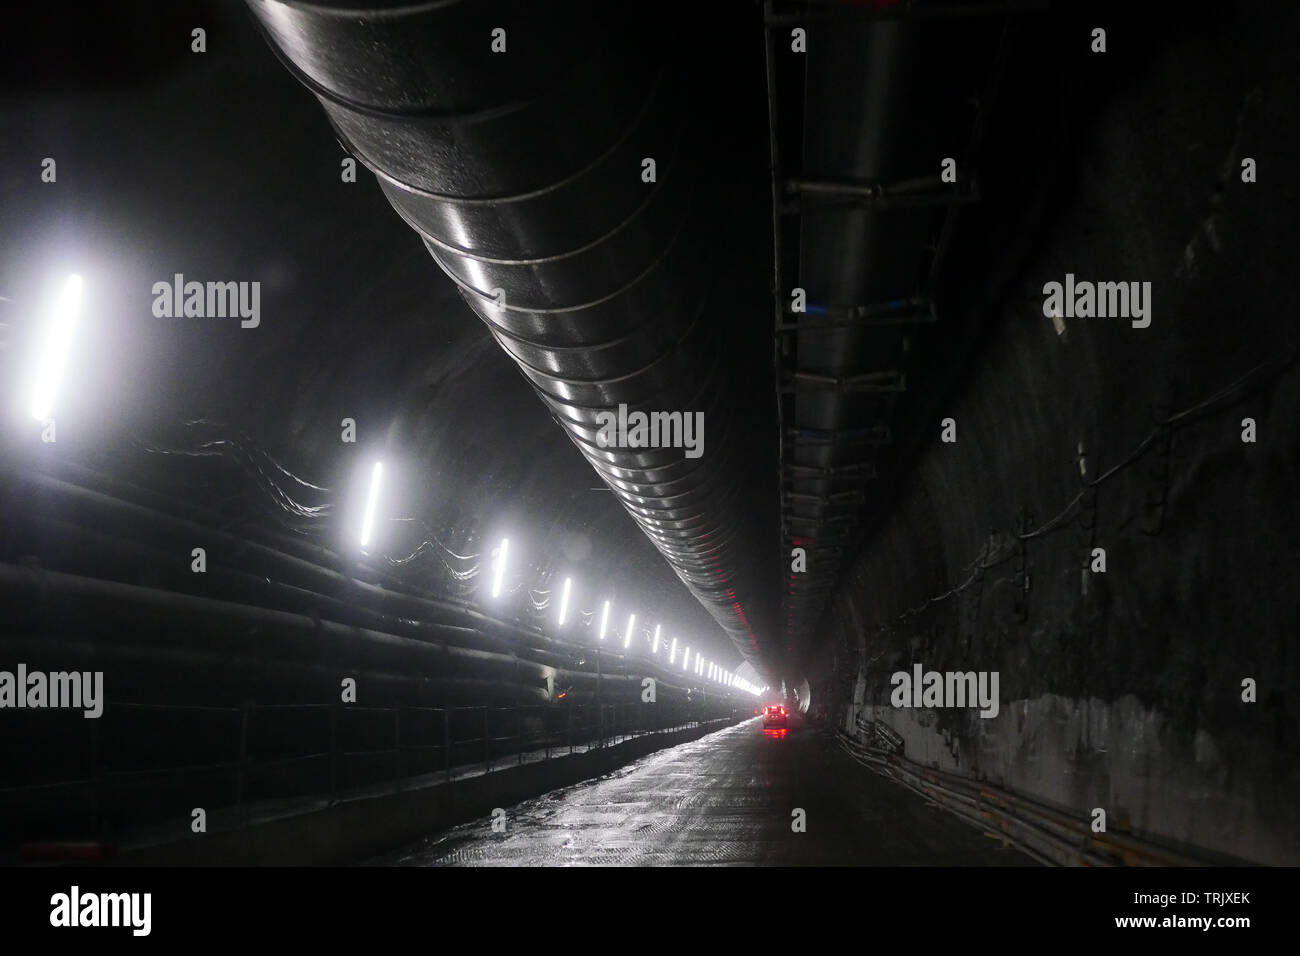 Lione-torino (TAV) ad alta velocità tunnel ferroviario sito in costruzione, Saint-Martin La Porte, Savoie, Auvergne-Rhône-Alpes Regione, Francia Foto Stock